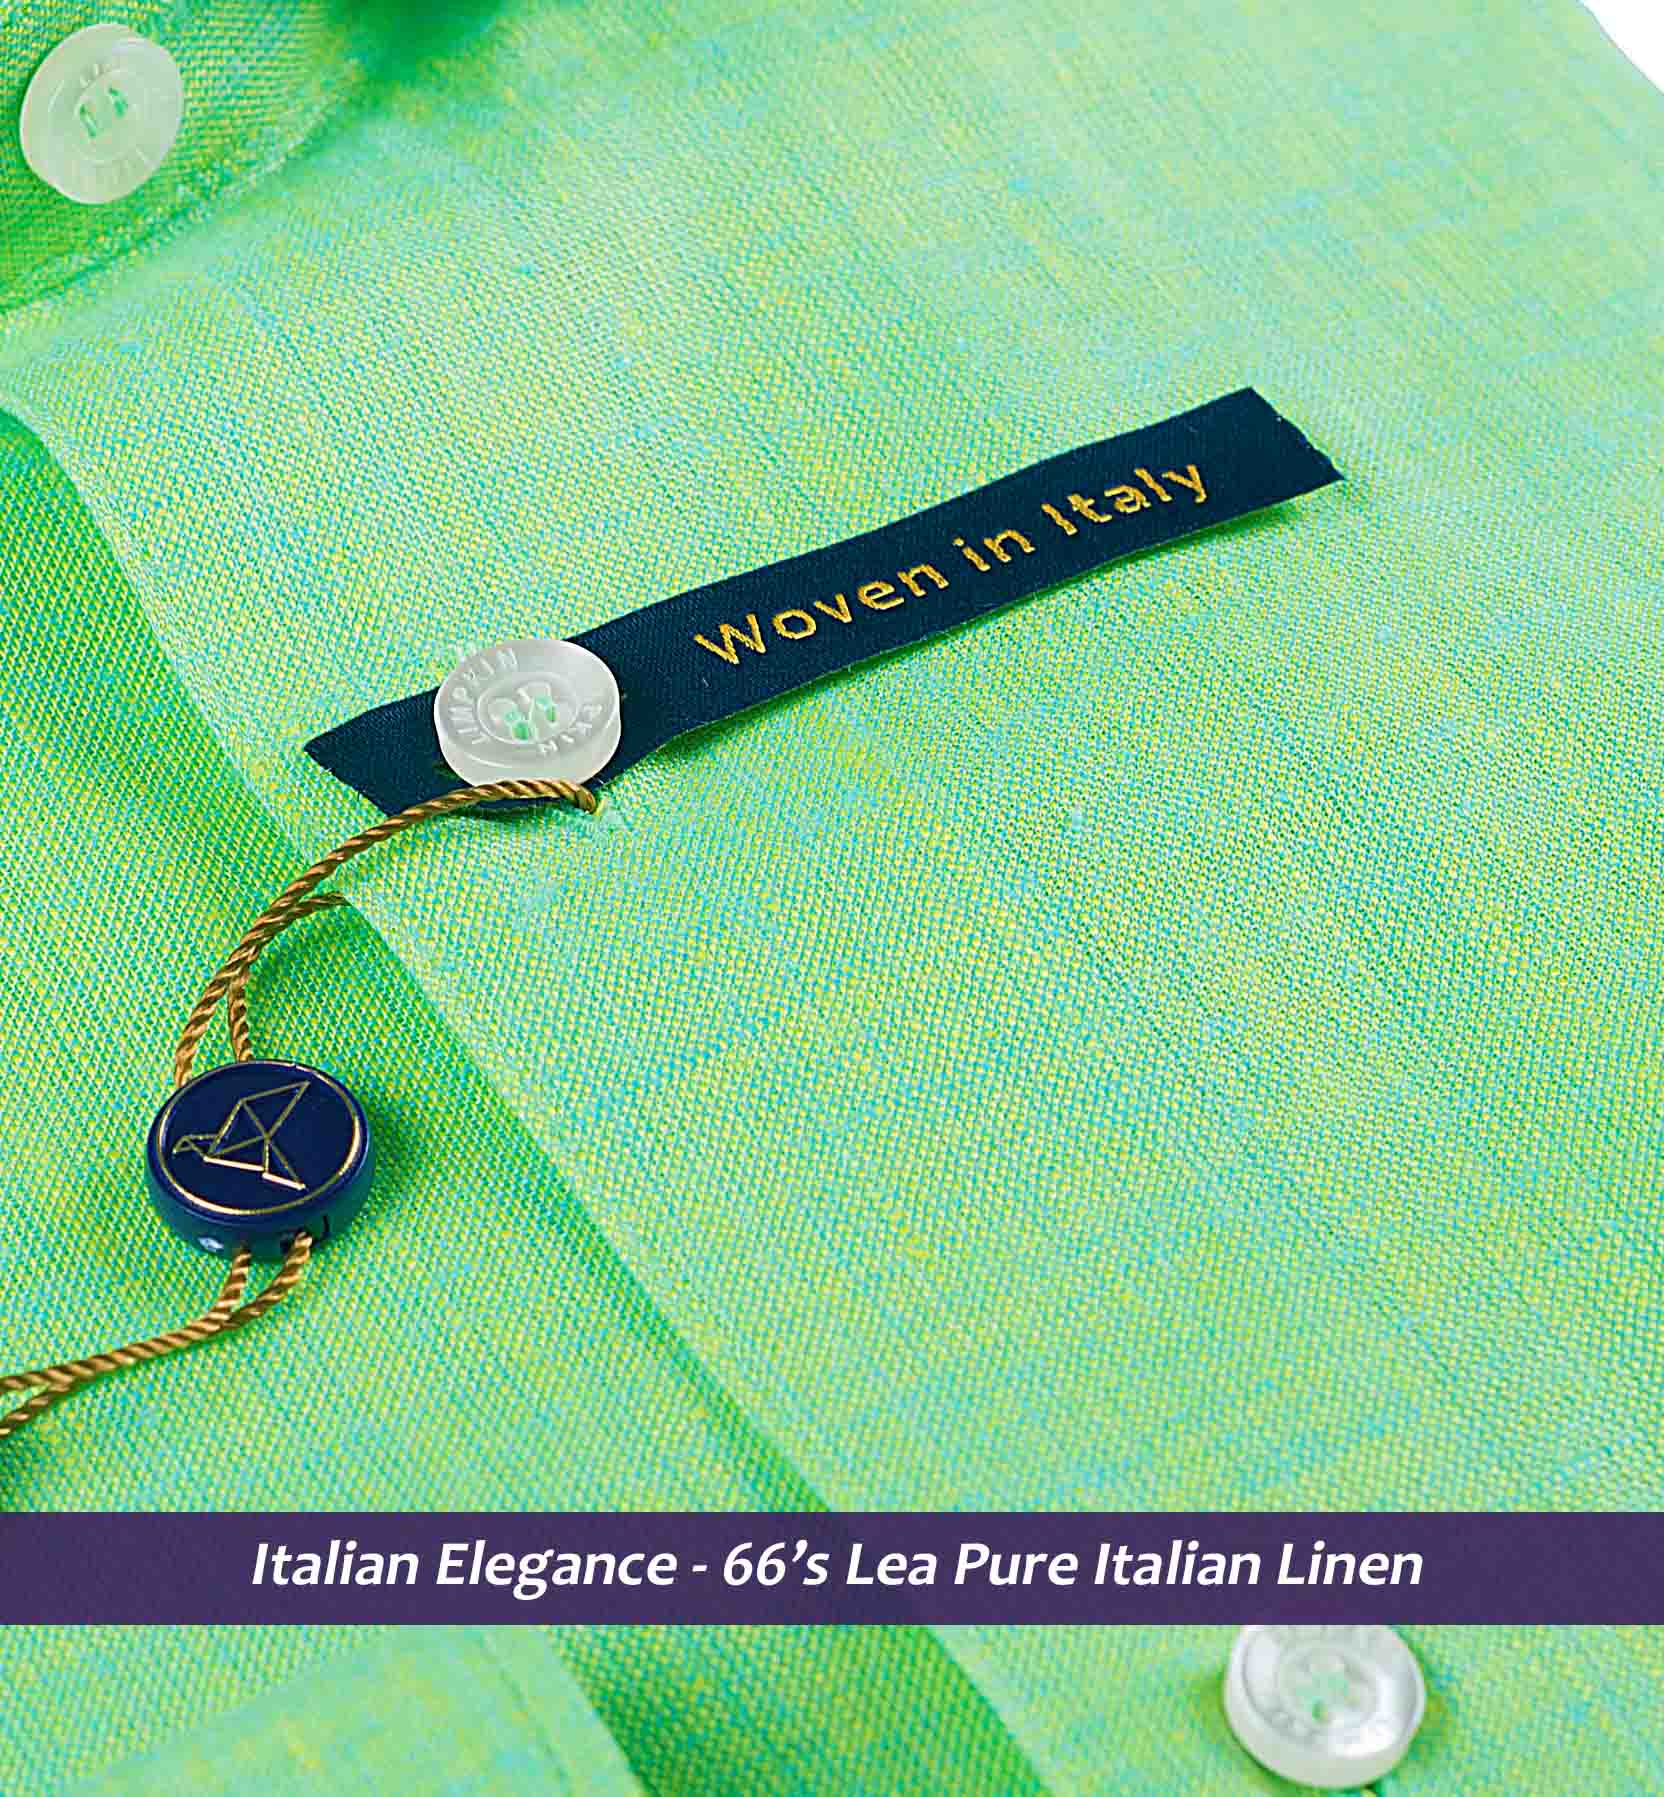 Sea Foam Green Solid Linen- 66's Lea Pure Italian Linen